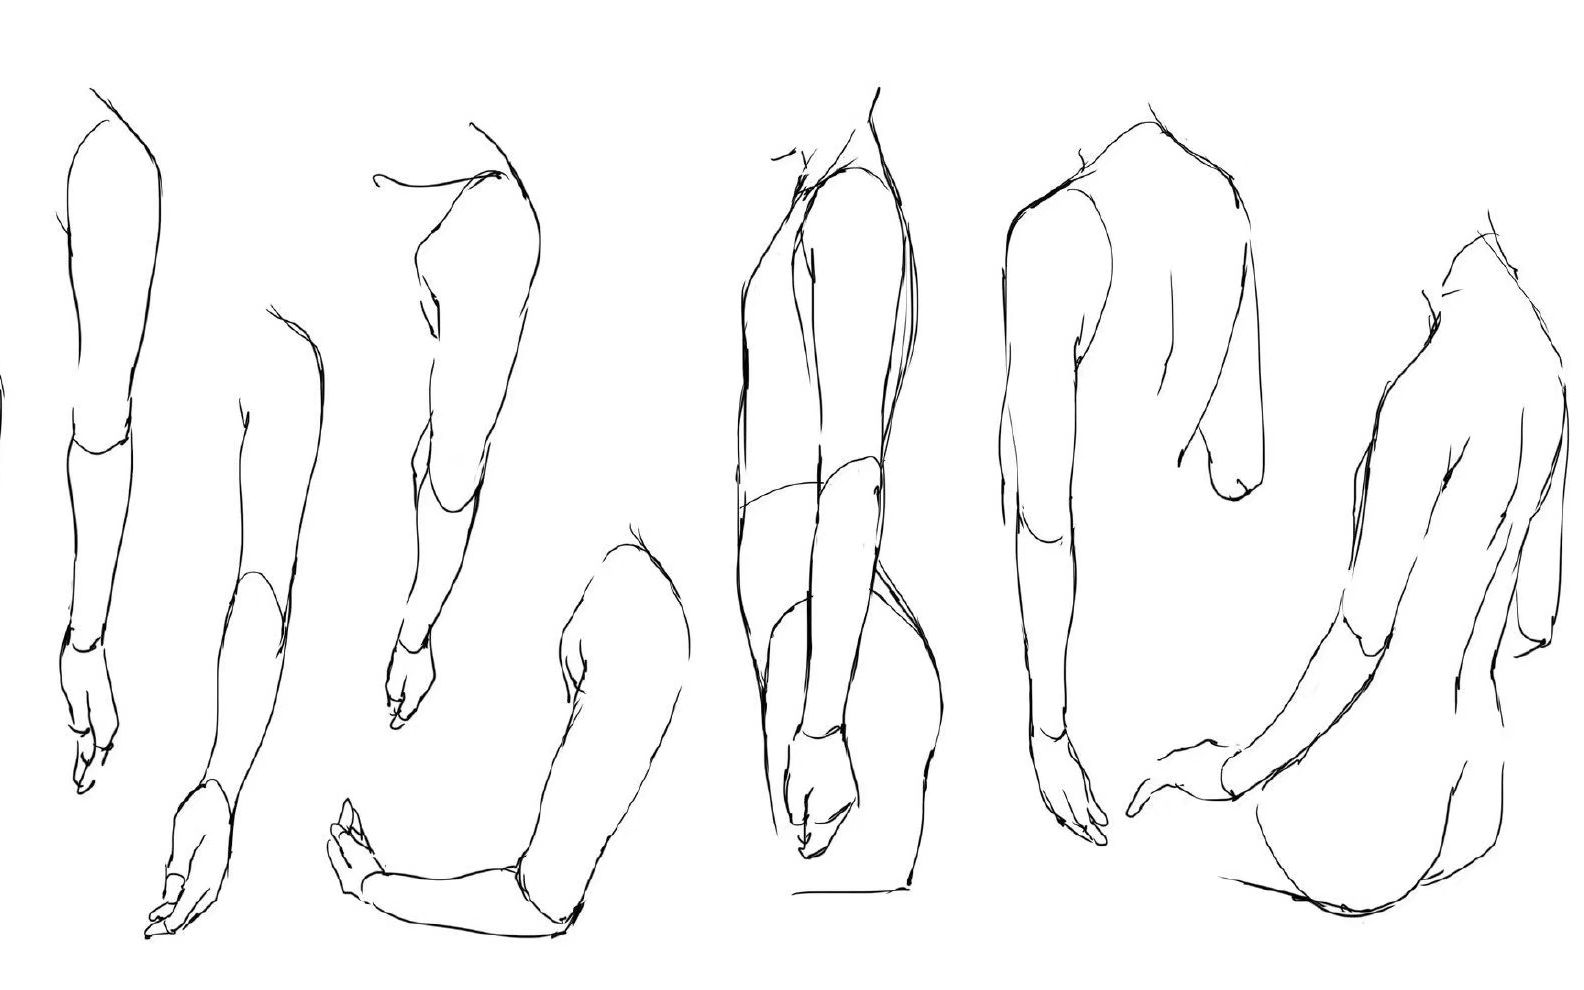 人物手臂动态结构化法萌新练习第一步